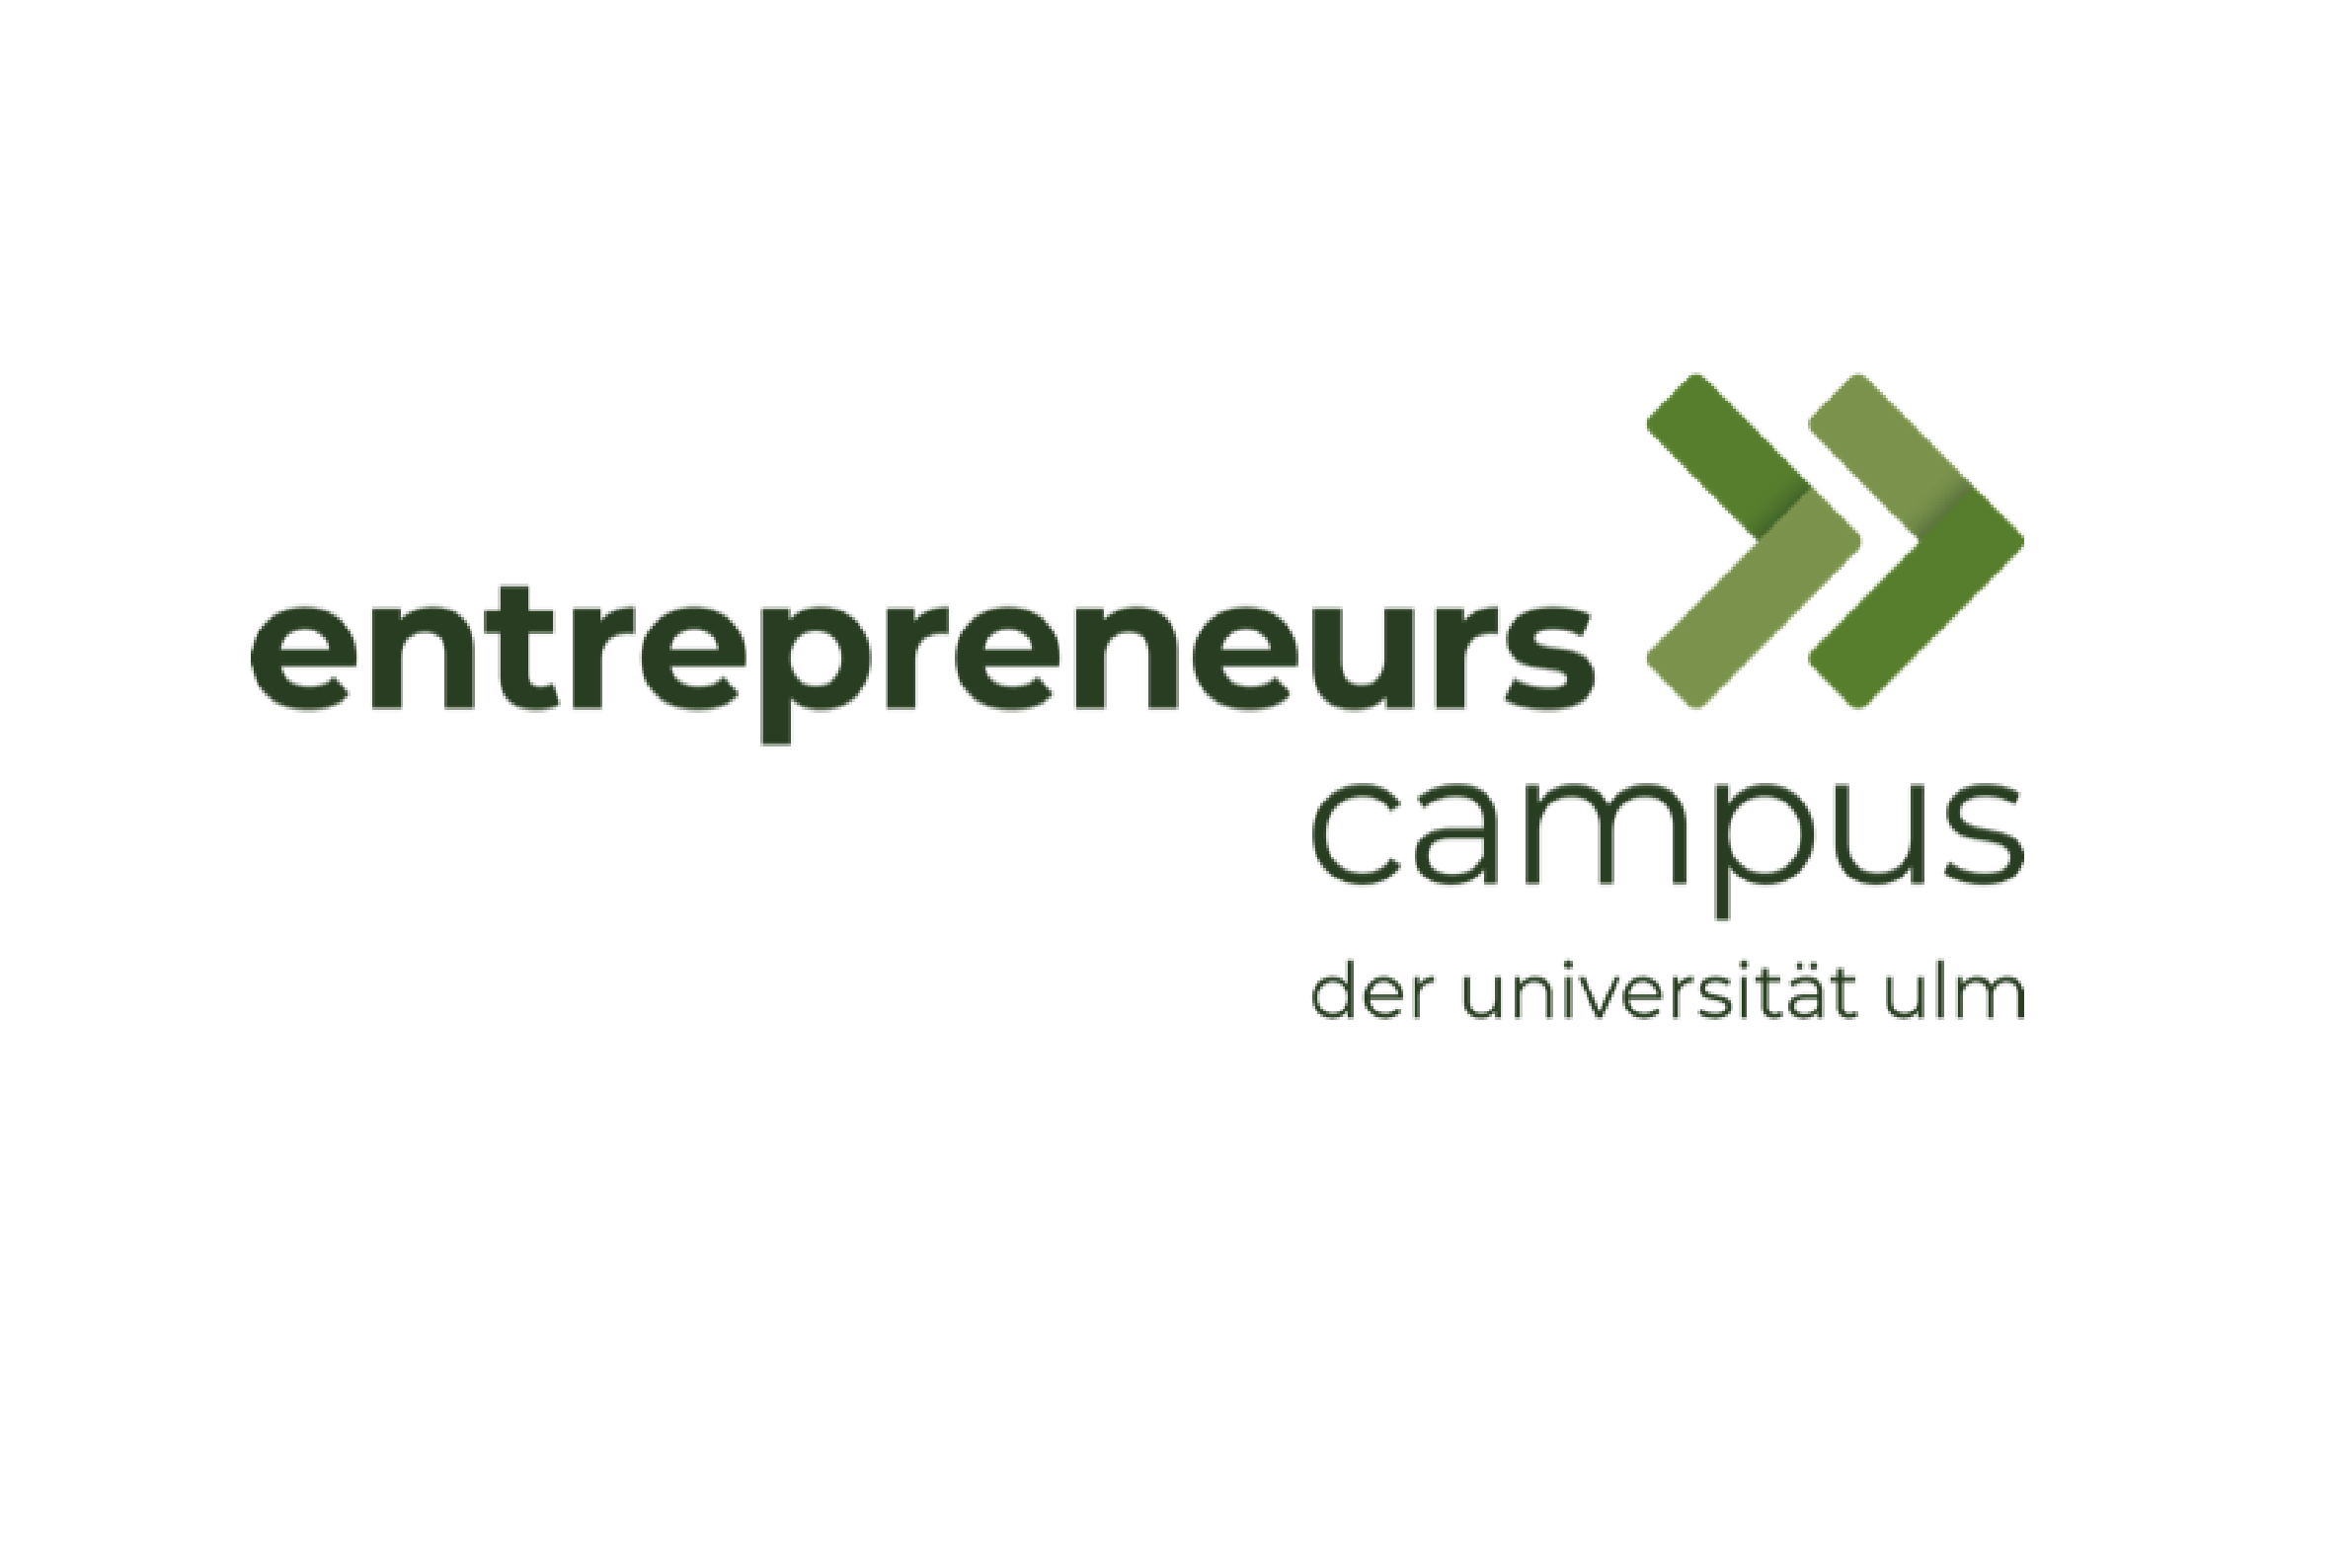 Entrepreneurs Campus